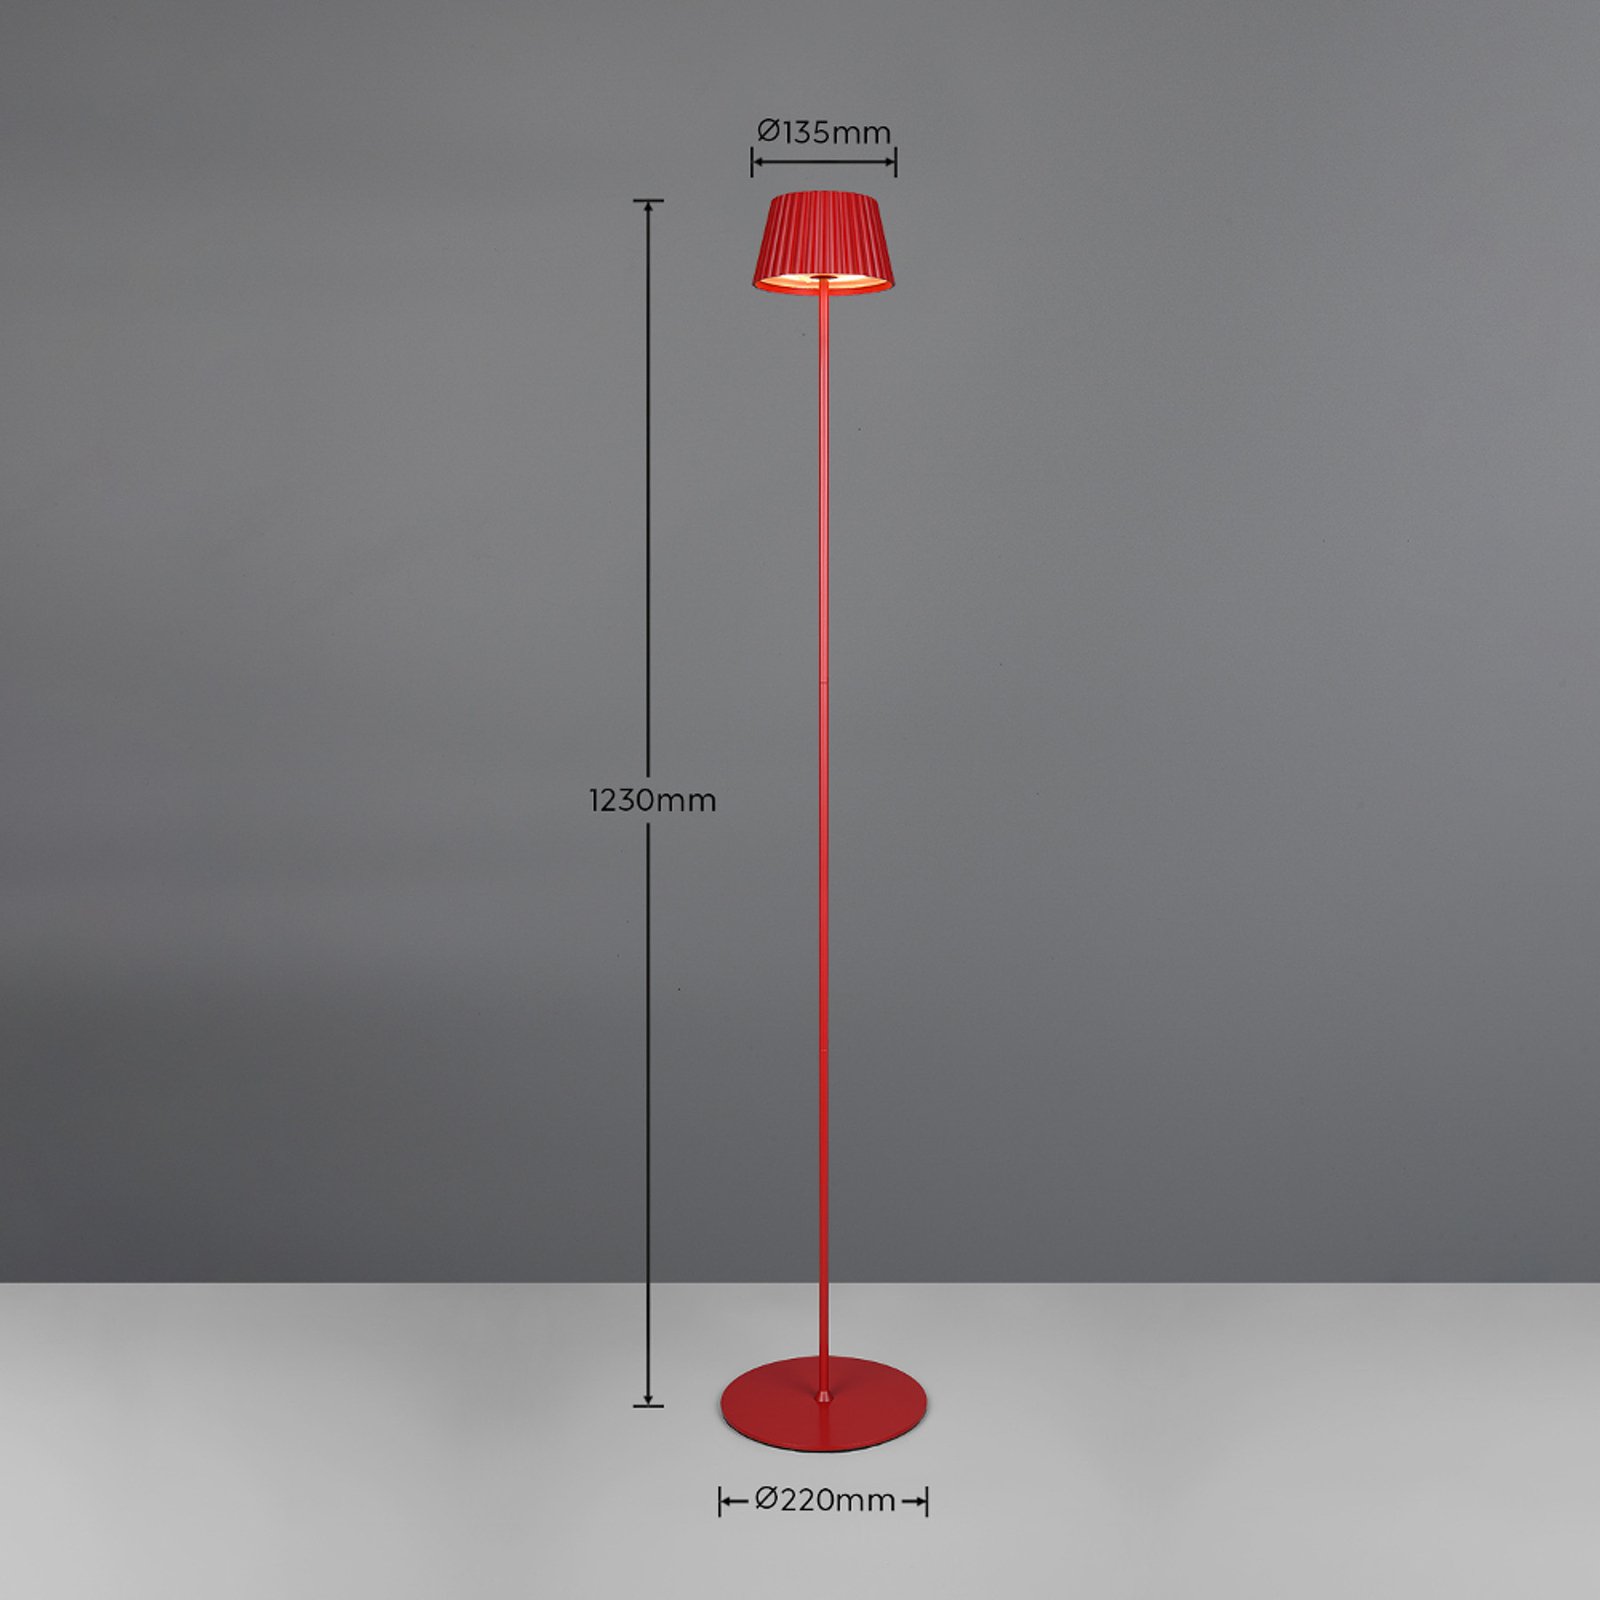 Suarez LED oppladbar gulvlampe, rød, høyde 123 cm, metall